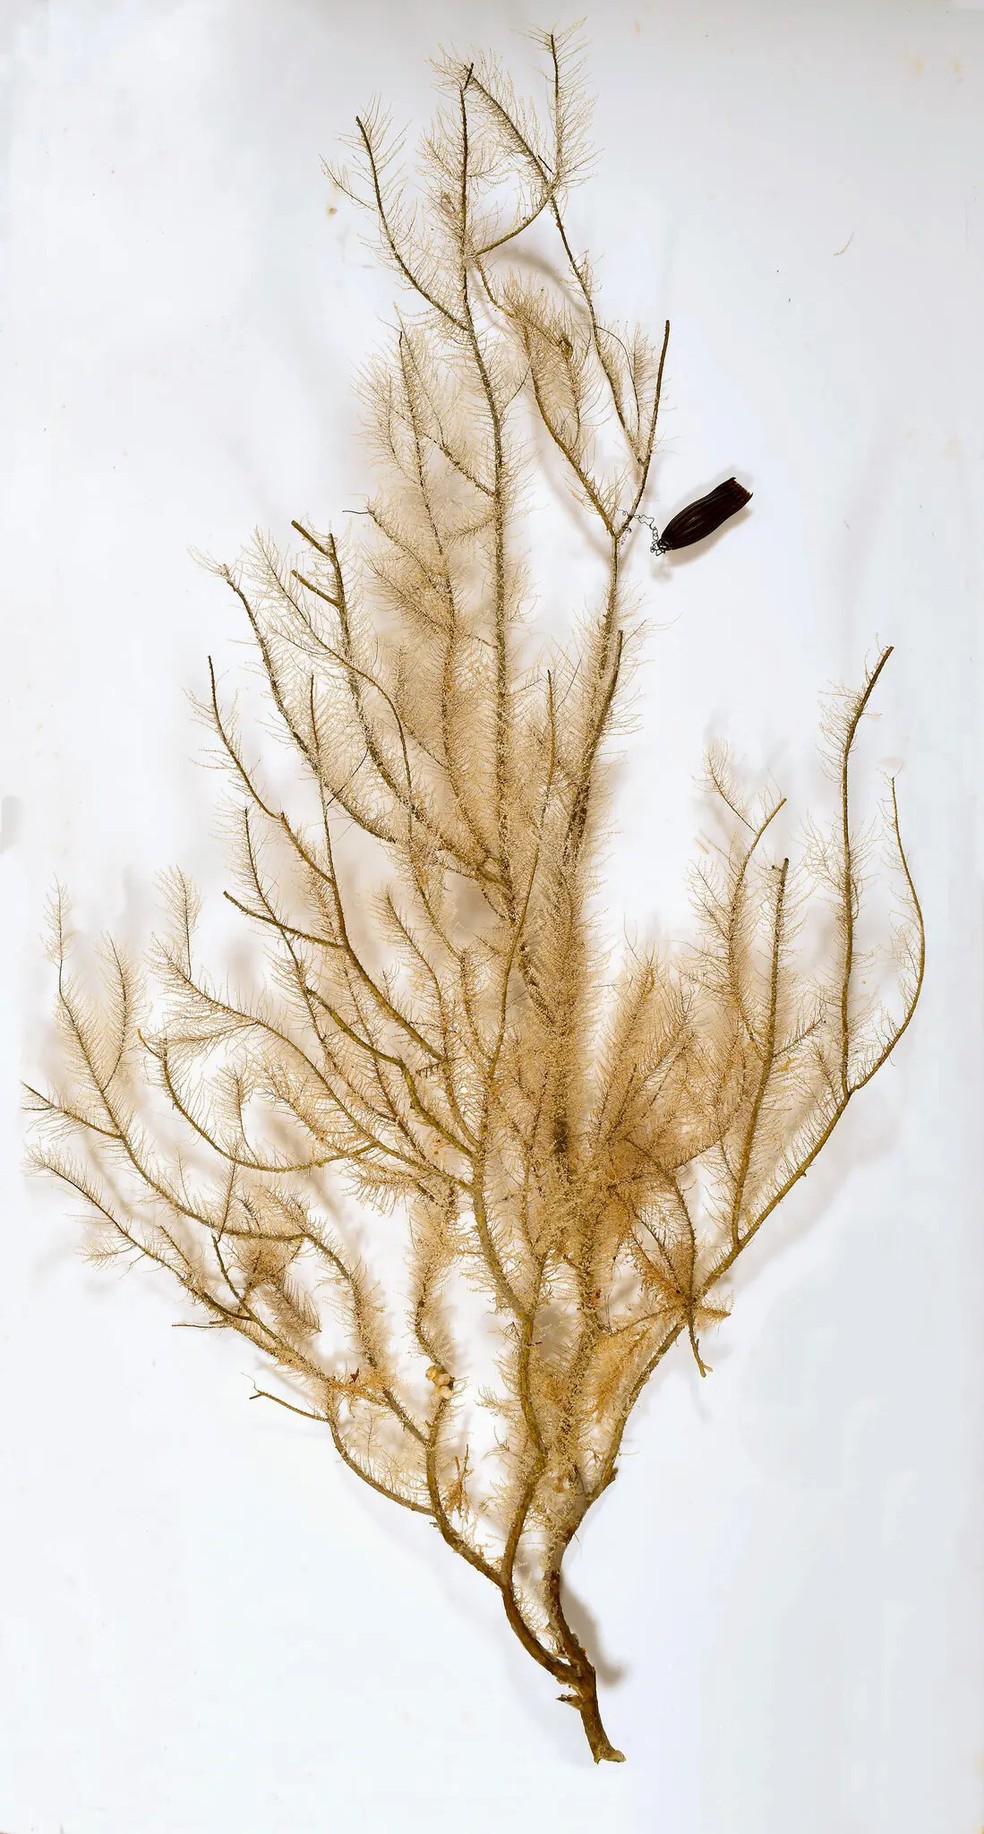 Cápsula do Apristurus ovicorrugatus acoplada em coral (no canto superior direito da imagem). — Foto: CSIRO Australian National Fish Collection